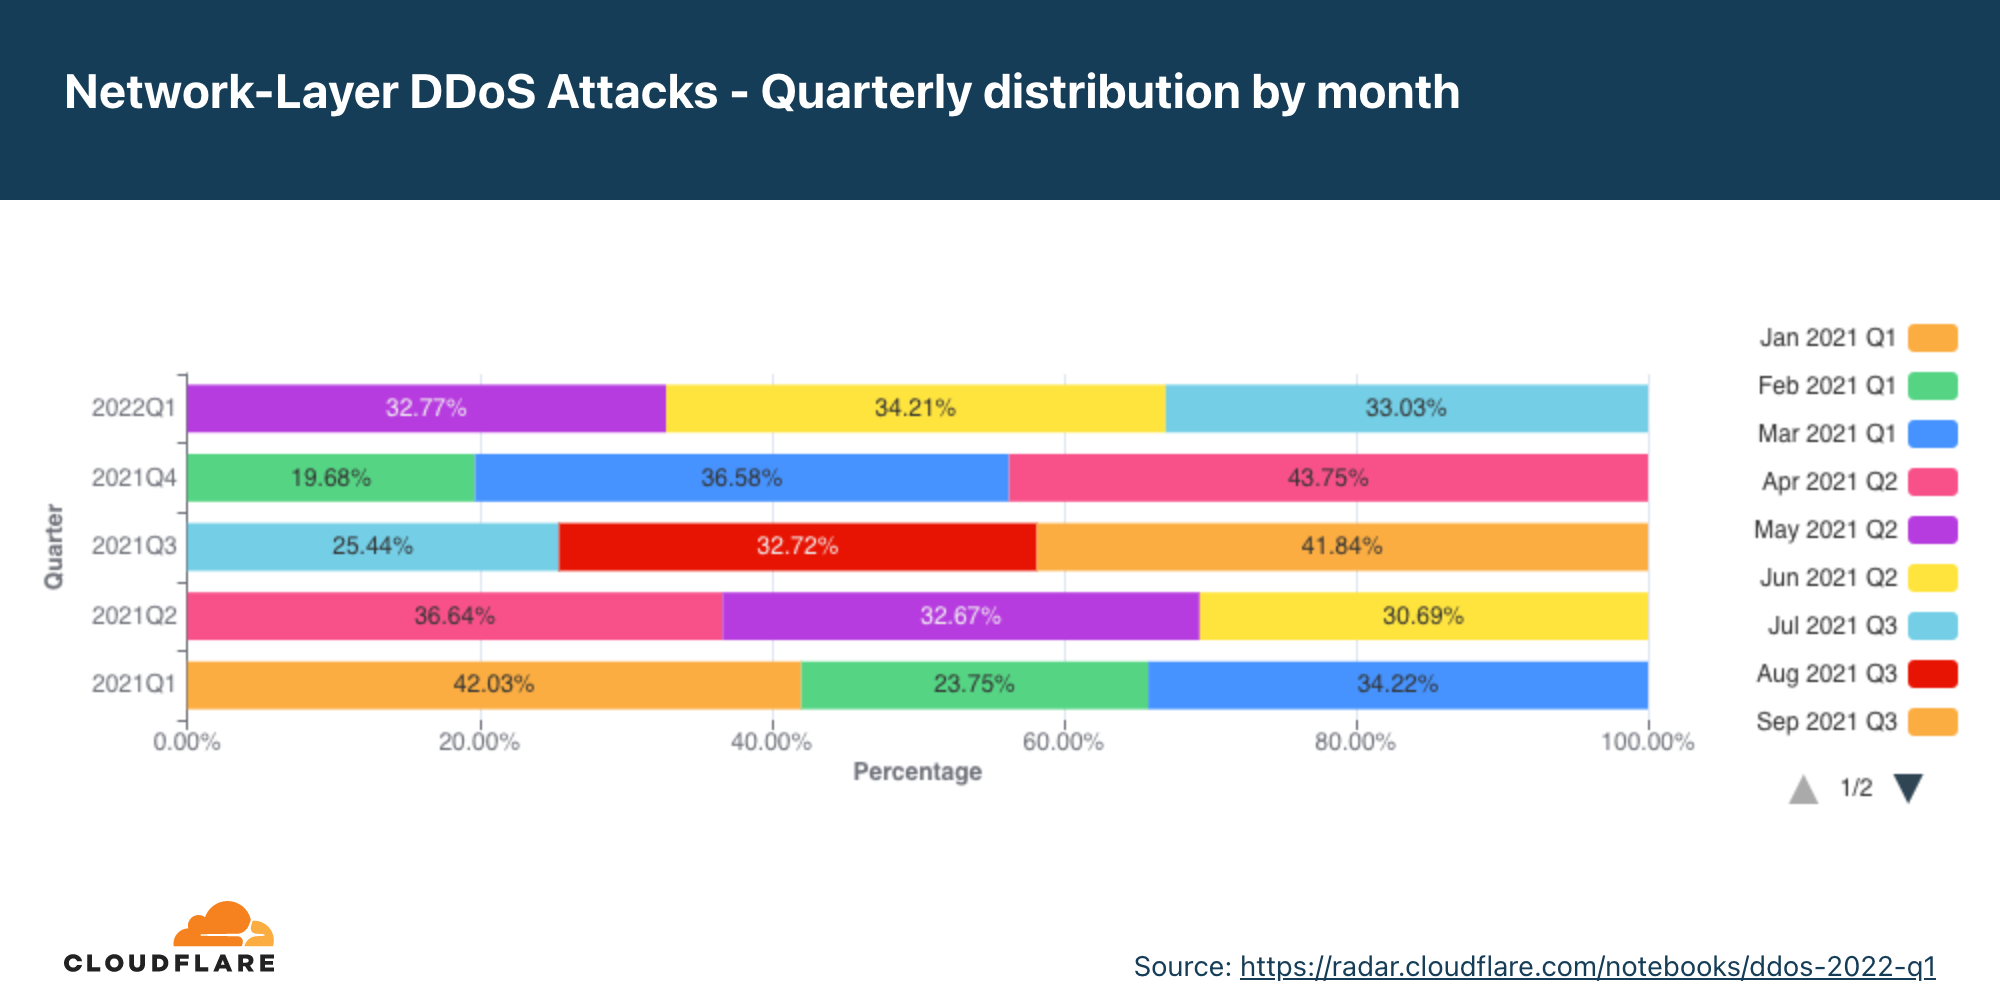 過去12ヶ月のネットワーク層DDoS攻撃の月別四半期分布のグラフ